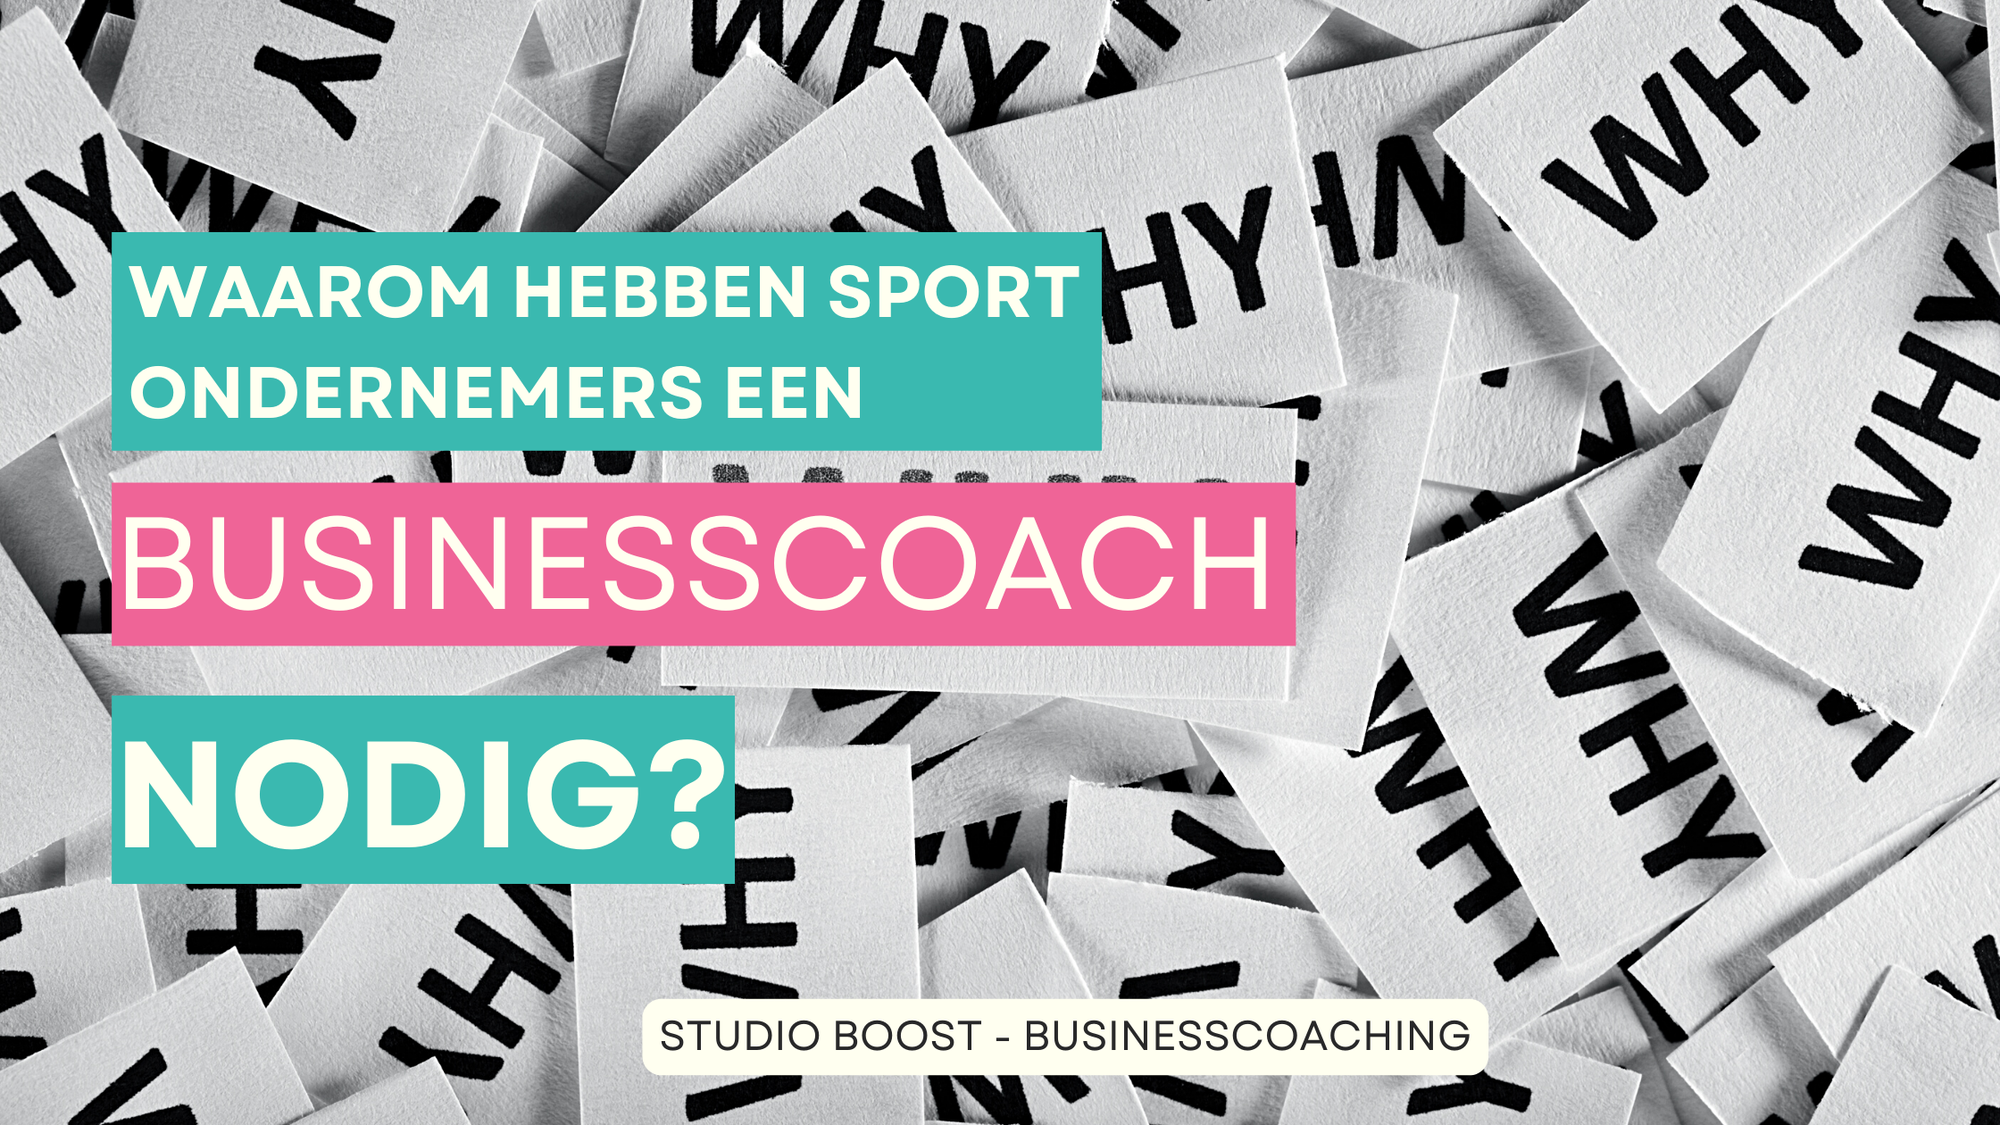 Waarom hebben sportondernemers een businesscoach nodig?